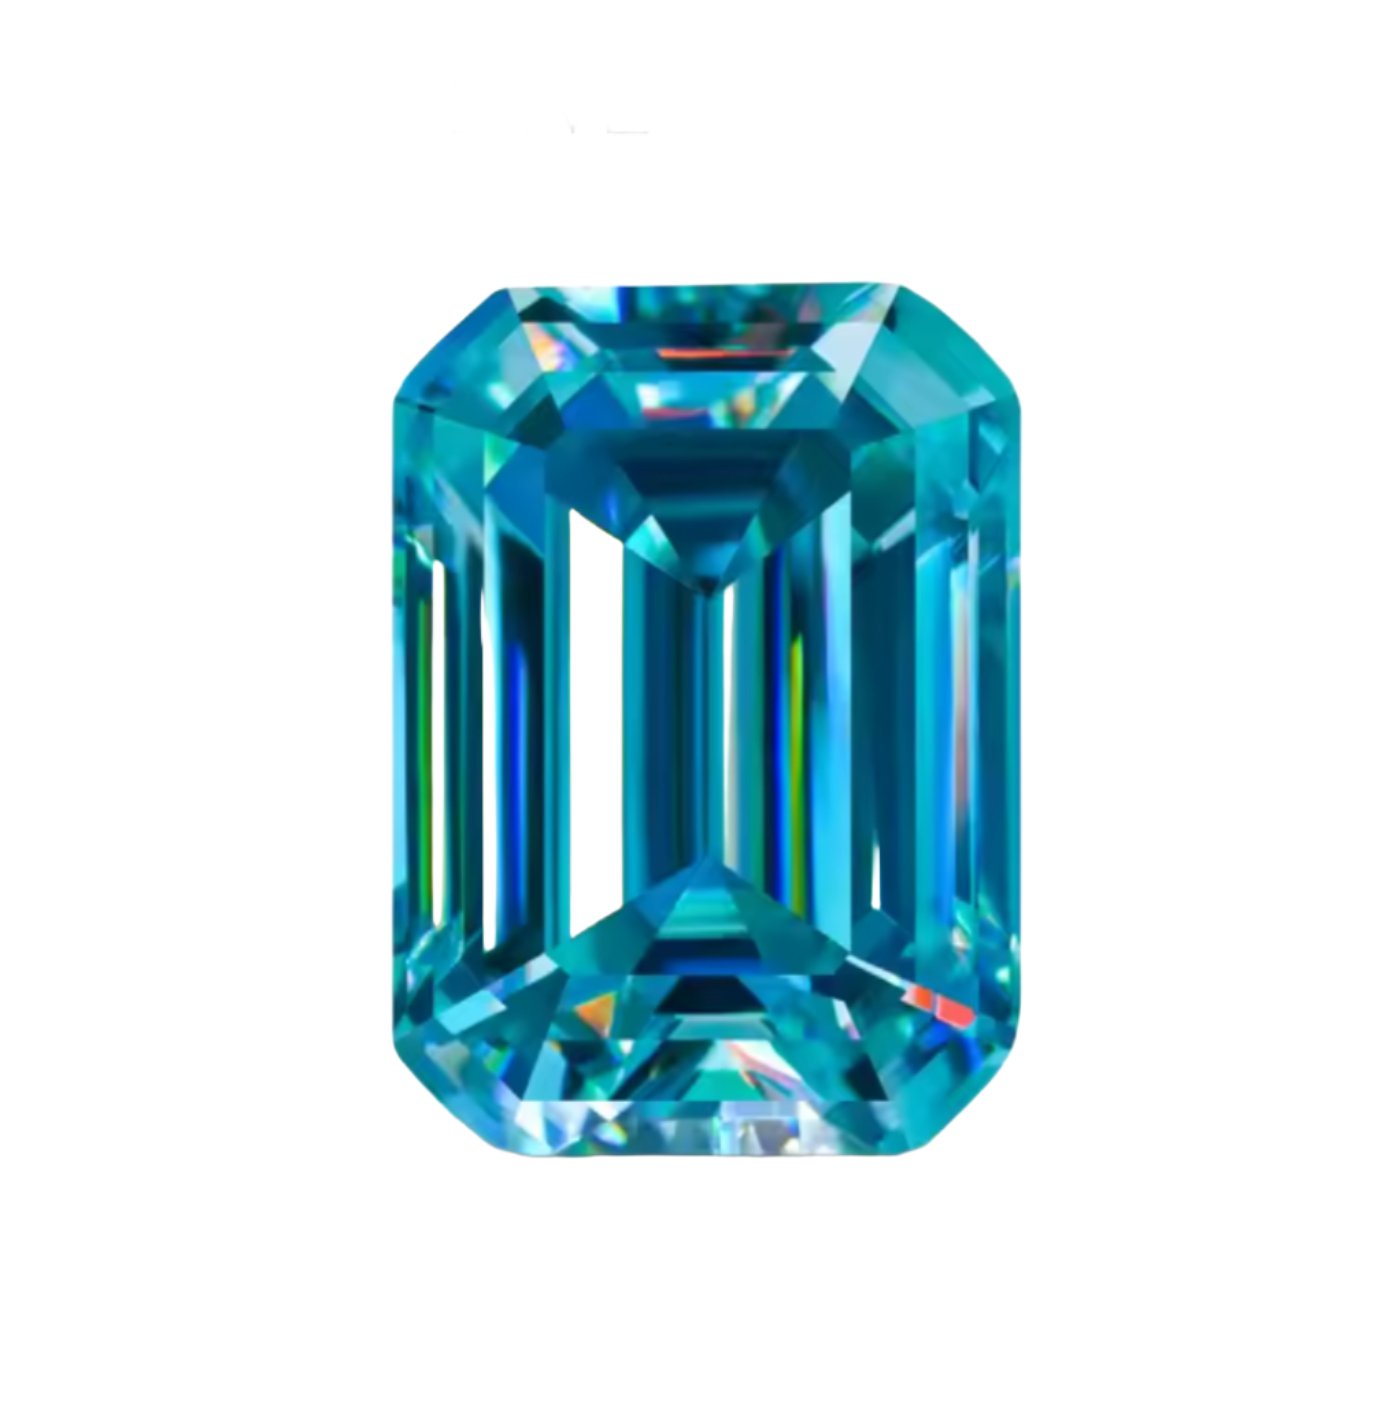 Cyan Blue Emerald Cut Moissanite Stones - Boutique CZ